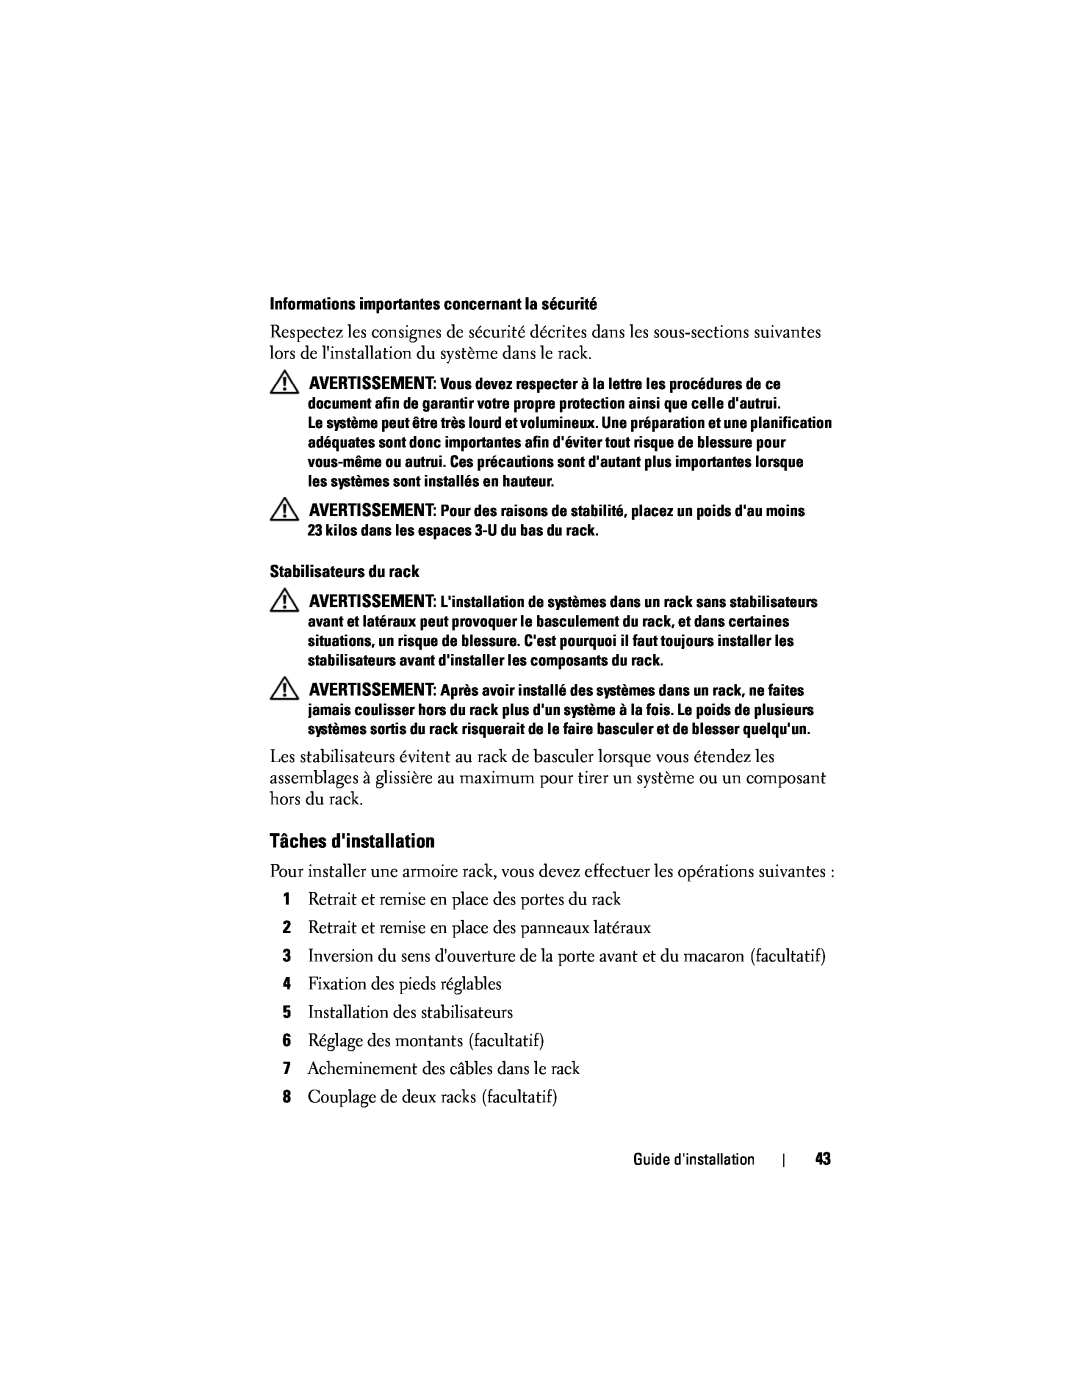 Dell 4220 manual Tâches dinstallation, Informations importantes concernant la sécurité, Stabilisateurs du rack 